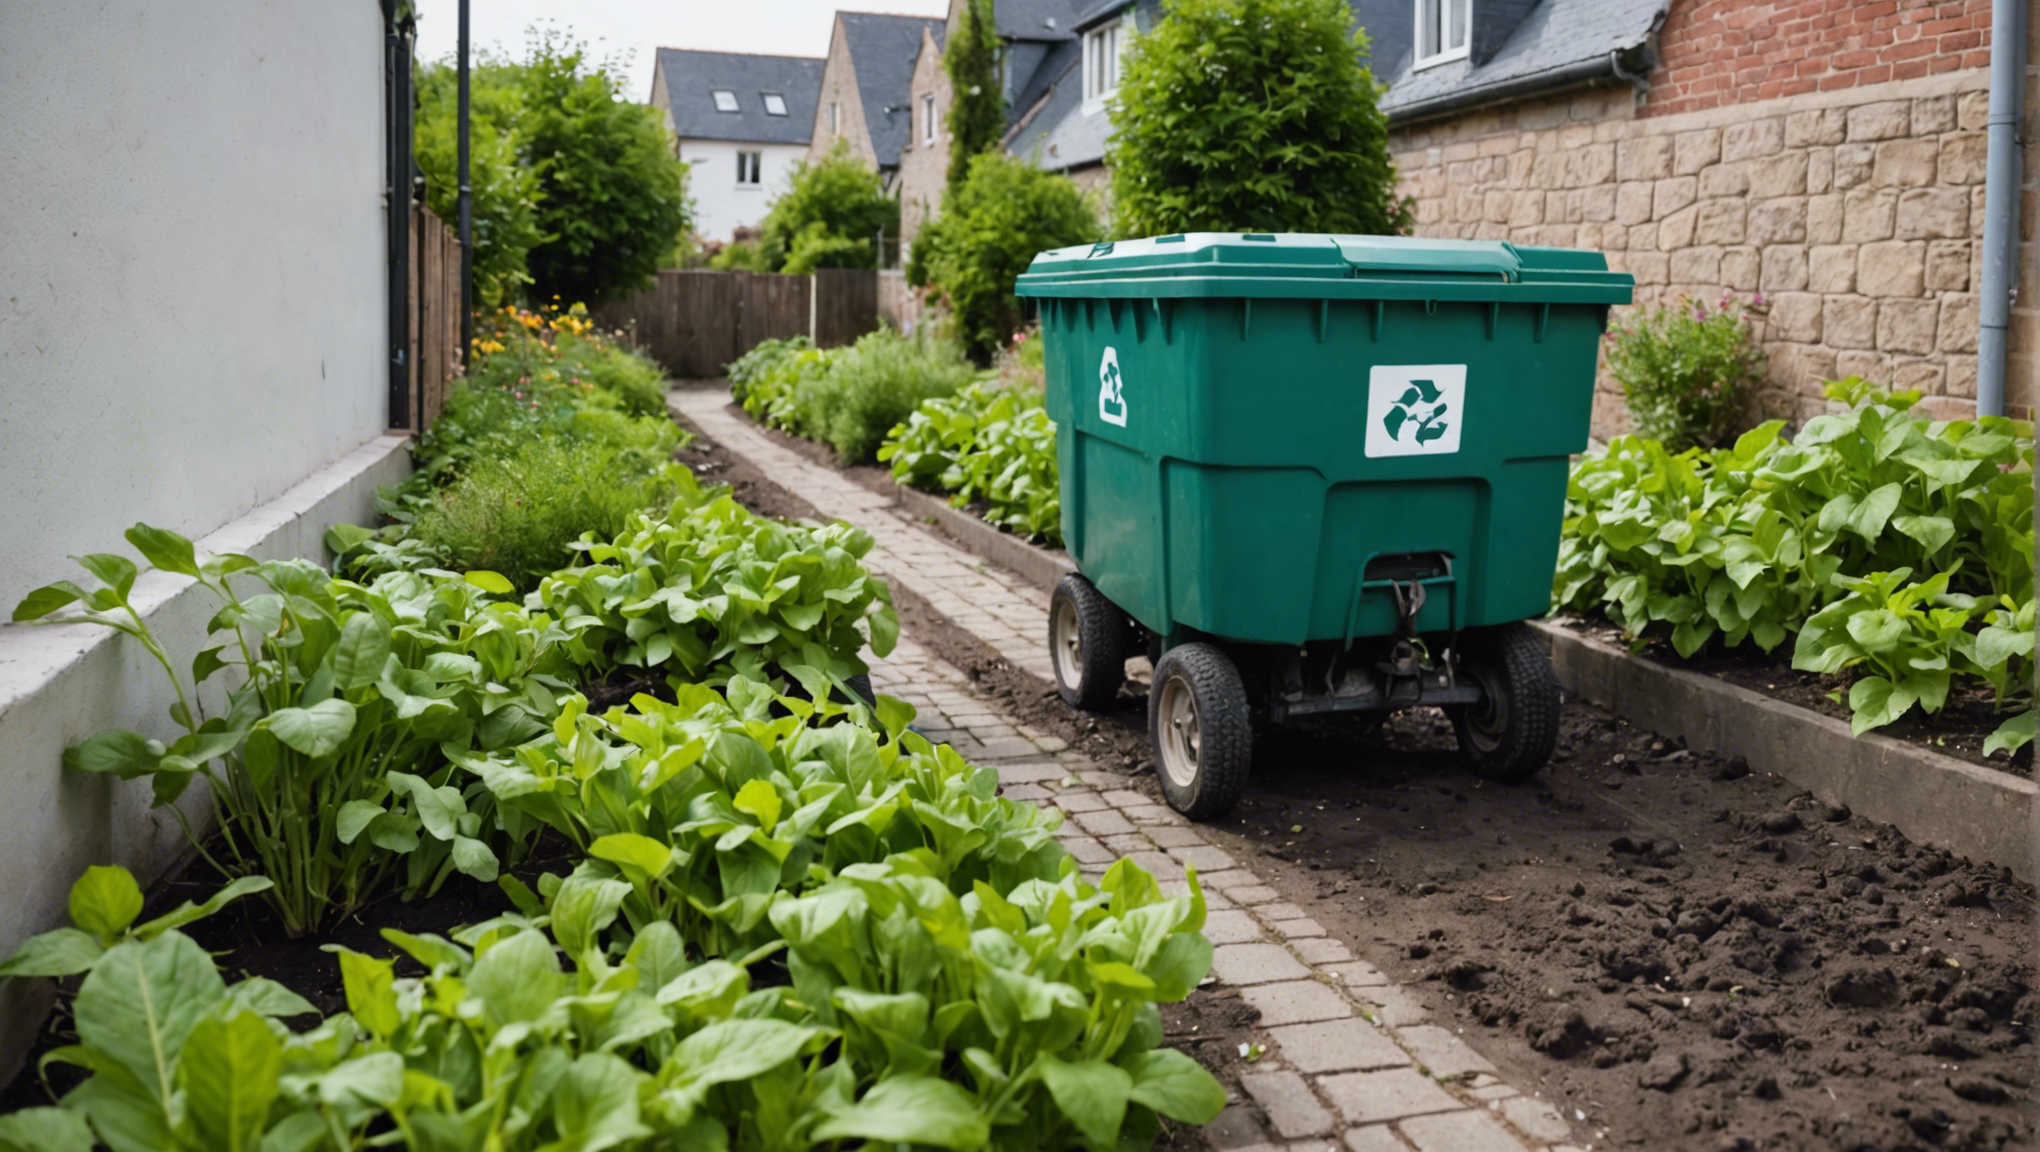 découvrez comment réussir votre compostage domestique en suivant 5 étapes simples pour réduire vos déchets et enrichir votre jardin naturellement !